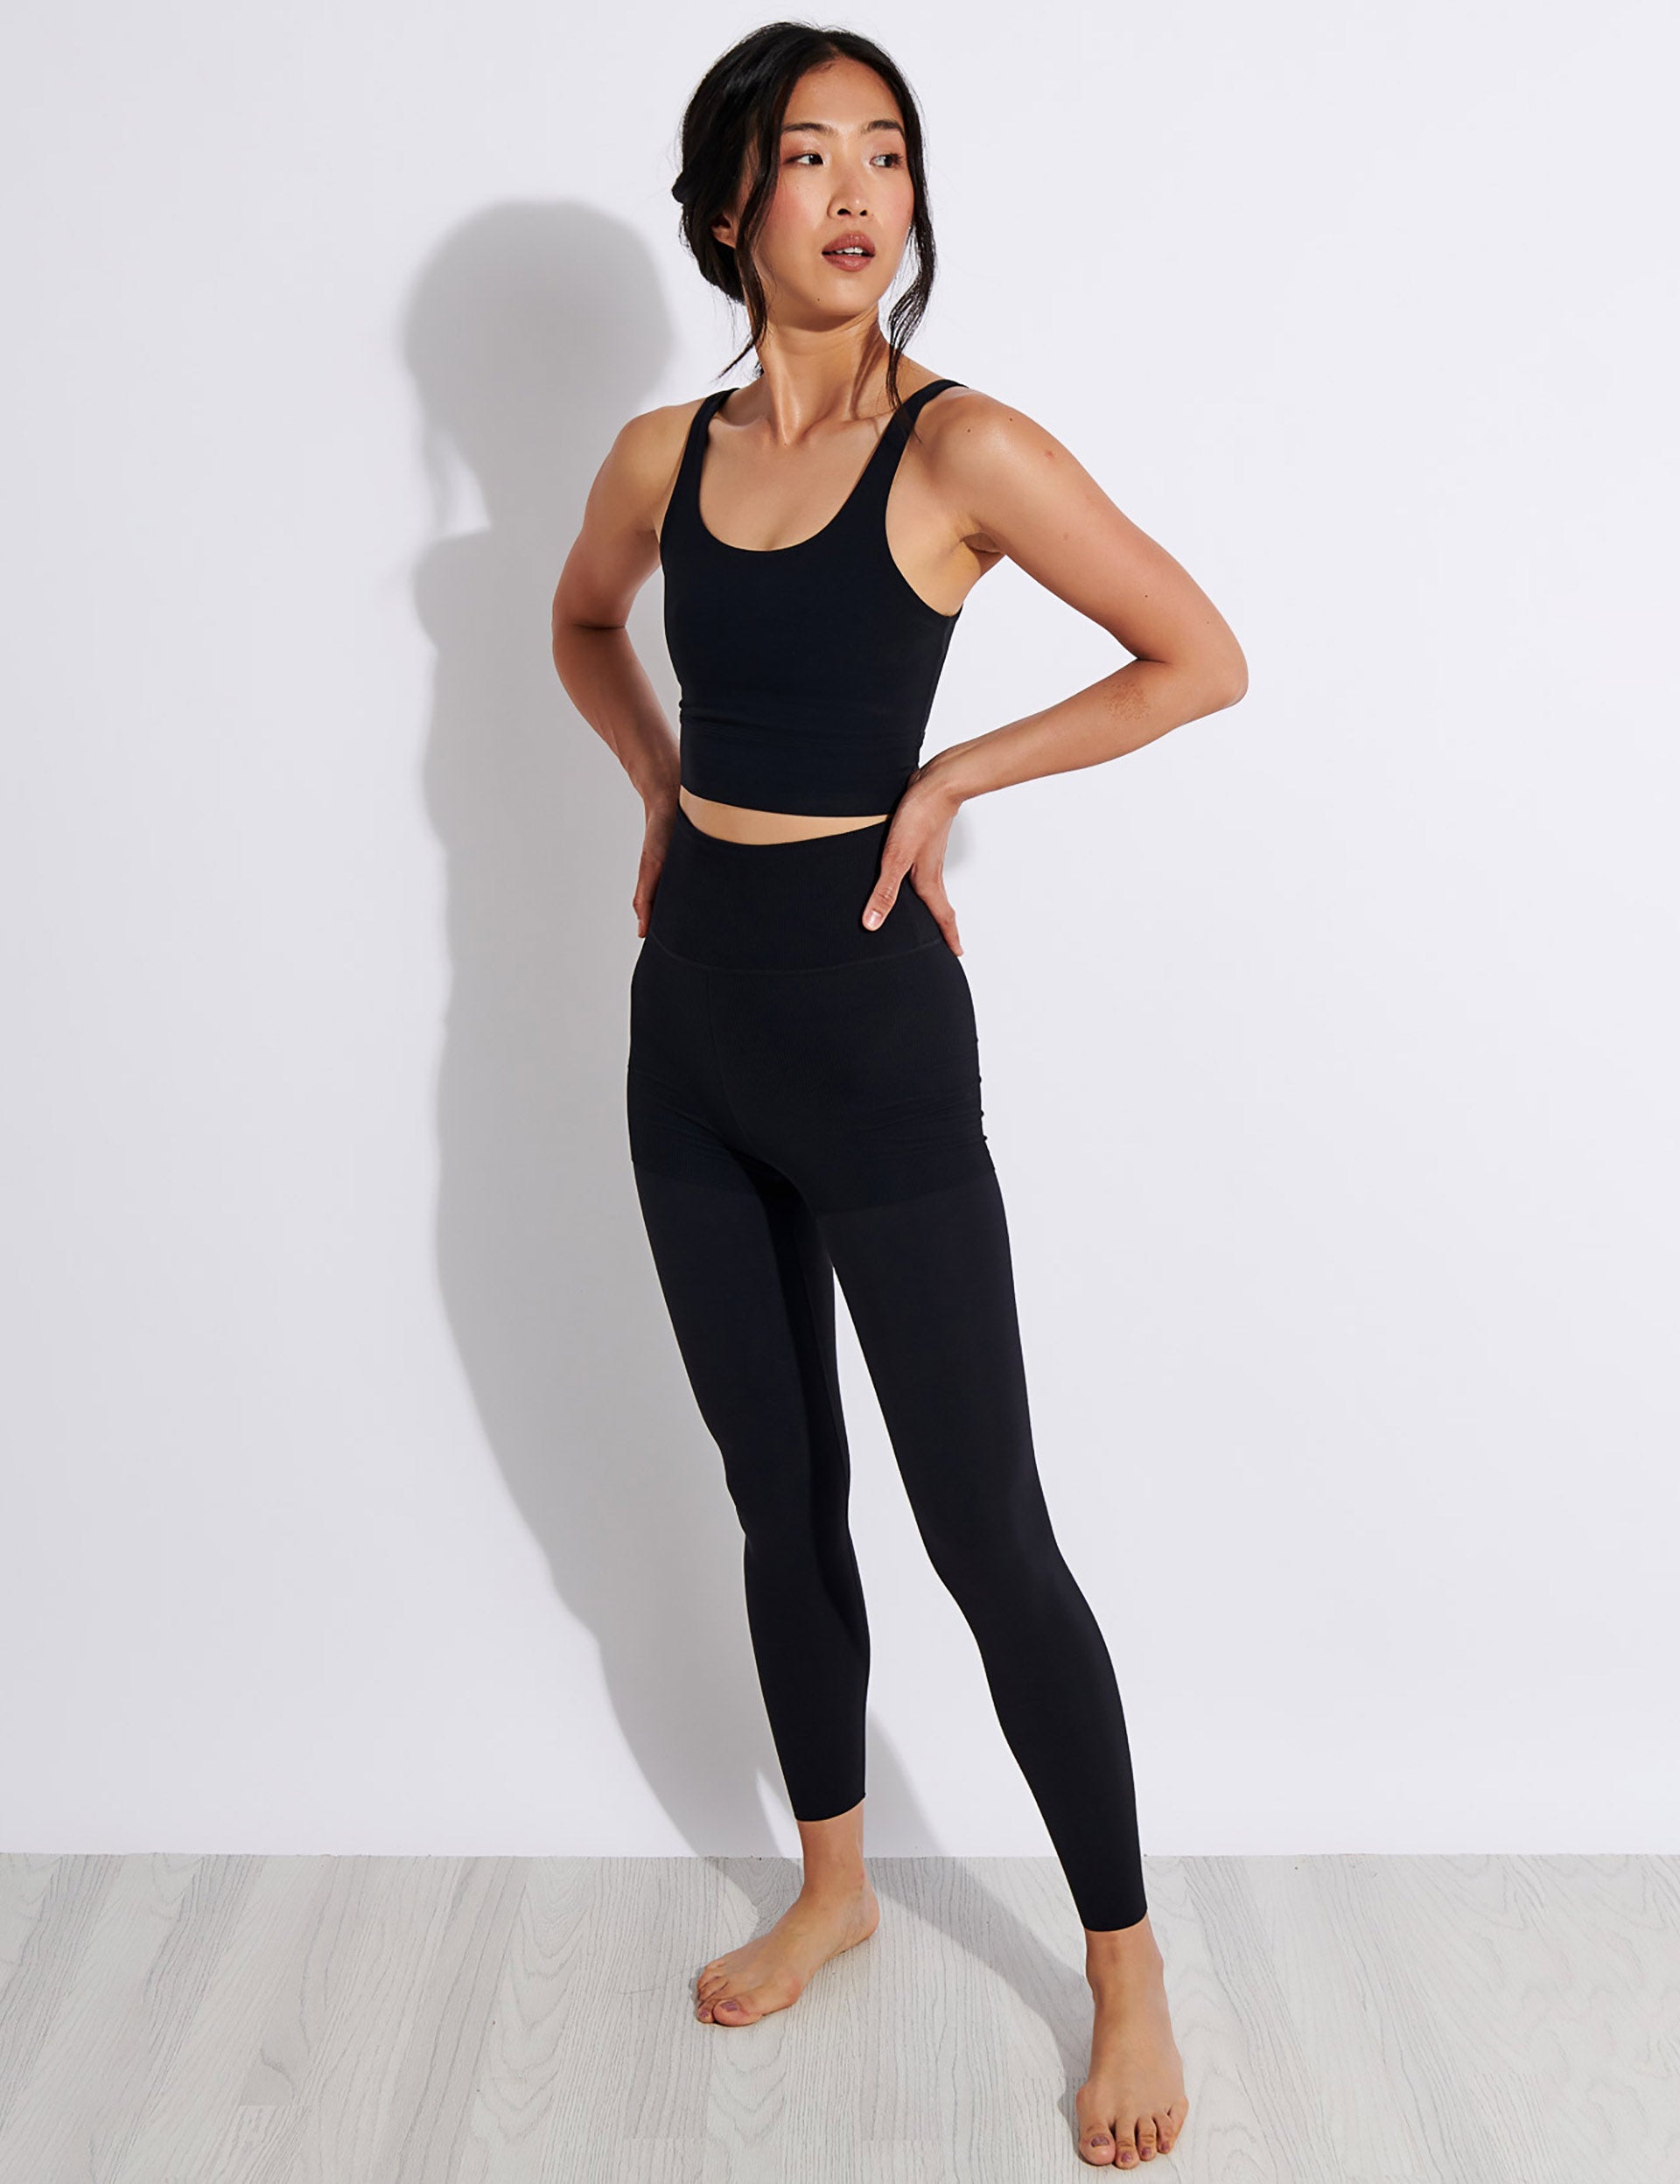 Nike Yoga Luxe Crop Top - Black/Dark Smoke Greyimage3- The Sports Edit